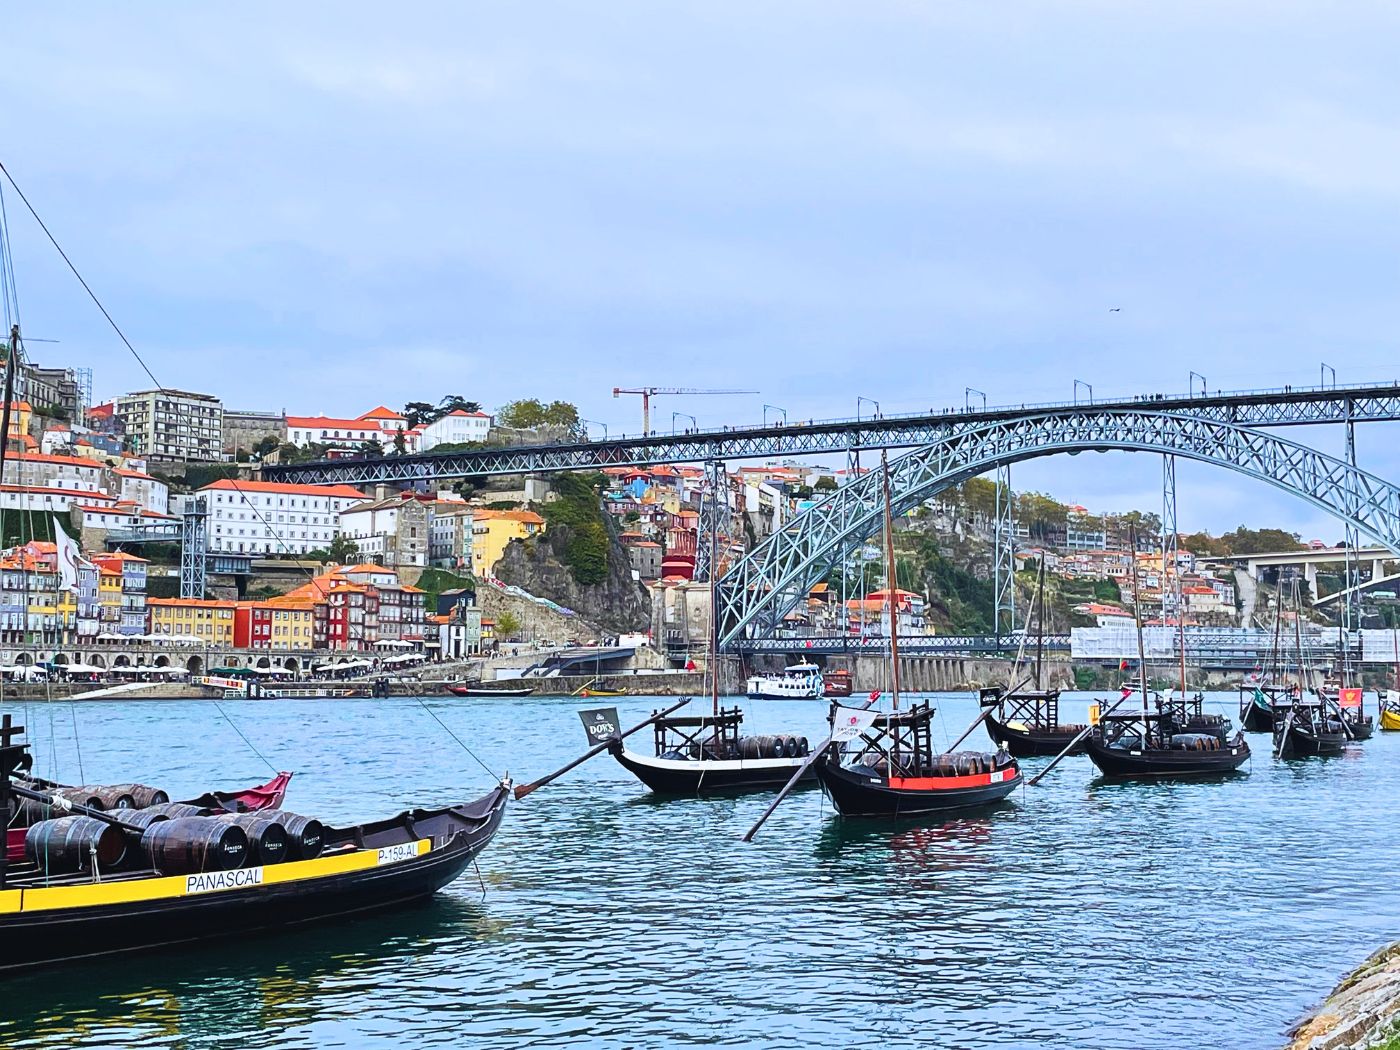 viking longship torgil docking at vila nova de gaia across from Porto